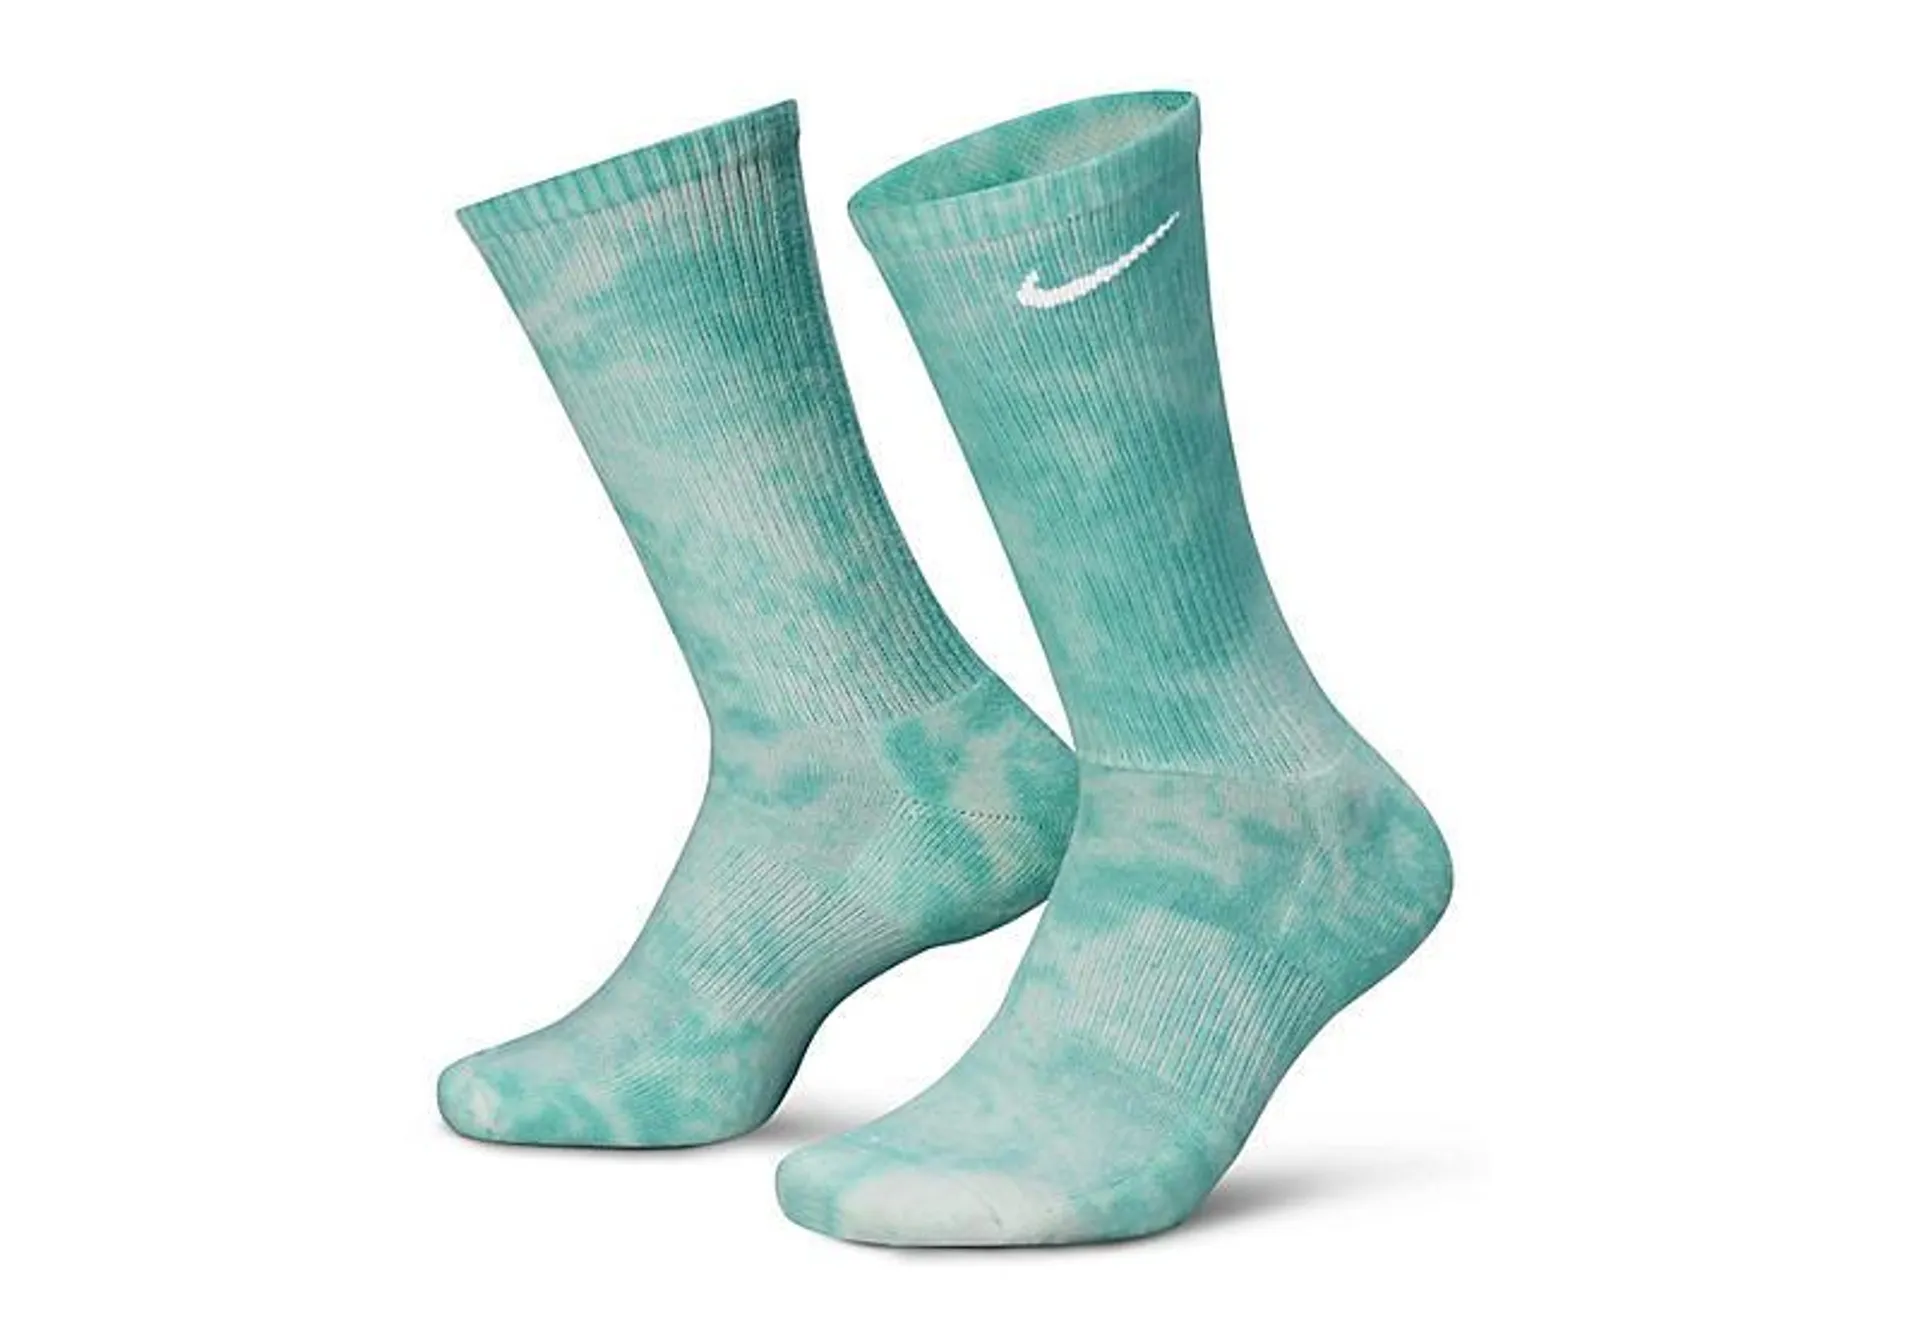 Nike Mens Tie Dye Crew Socks 1 Pair - Tie-dye